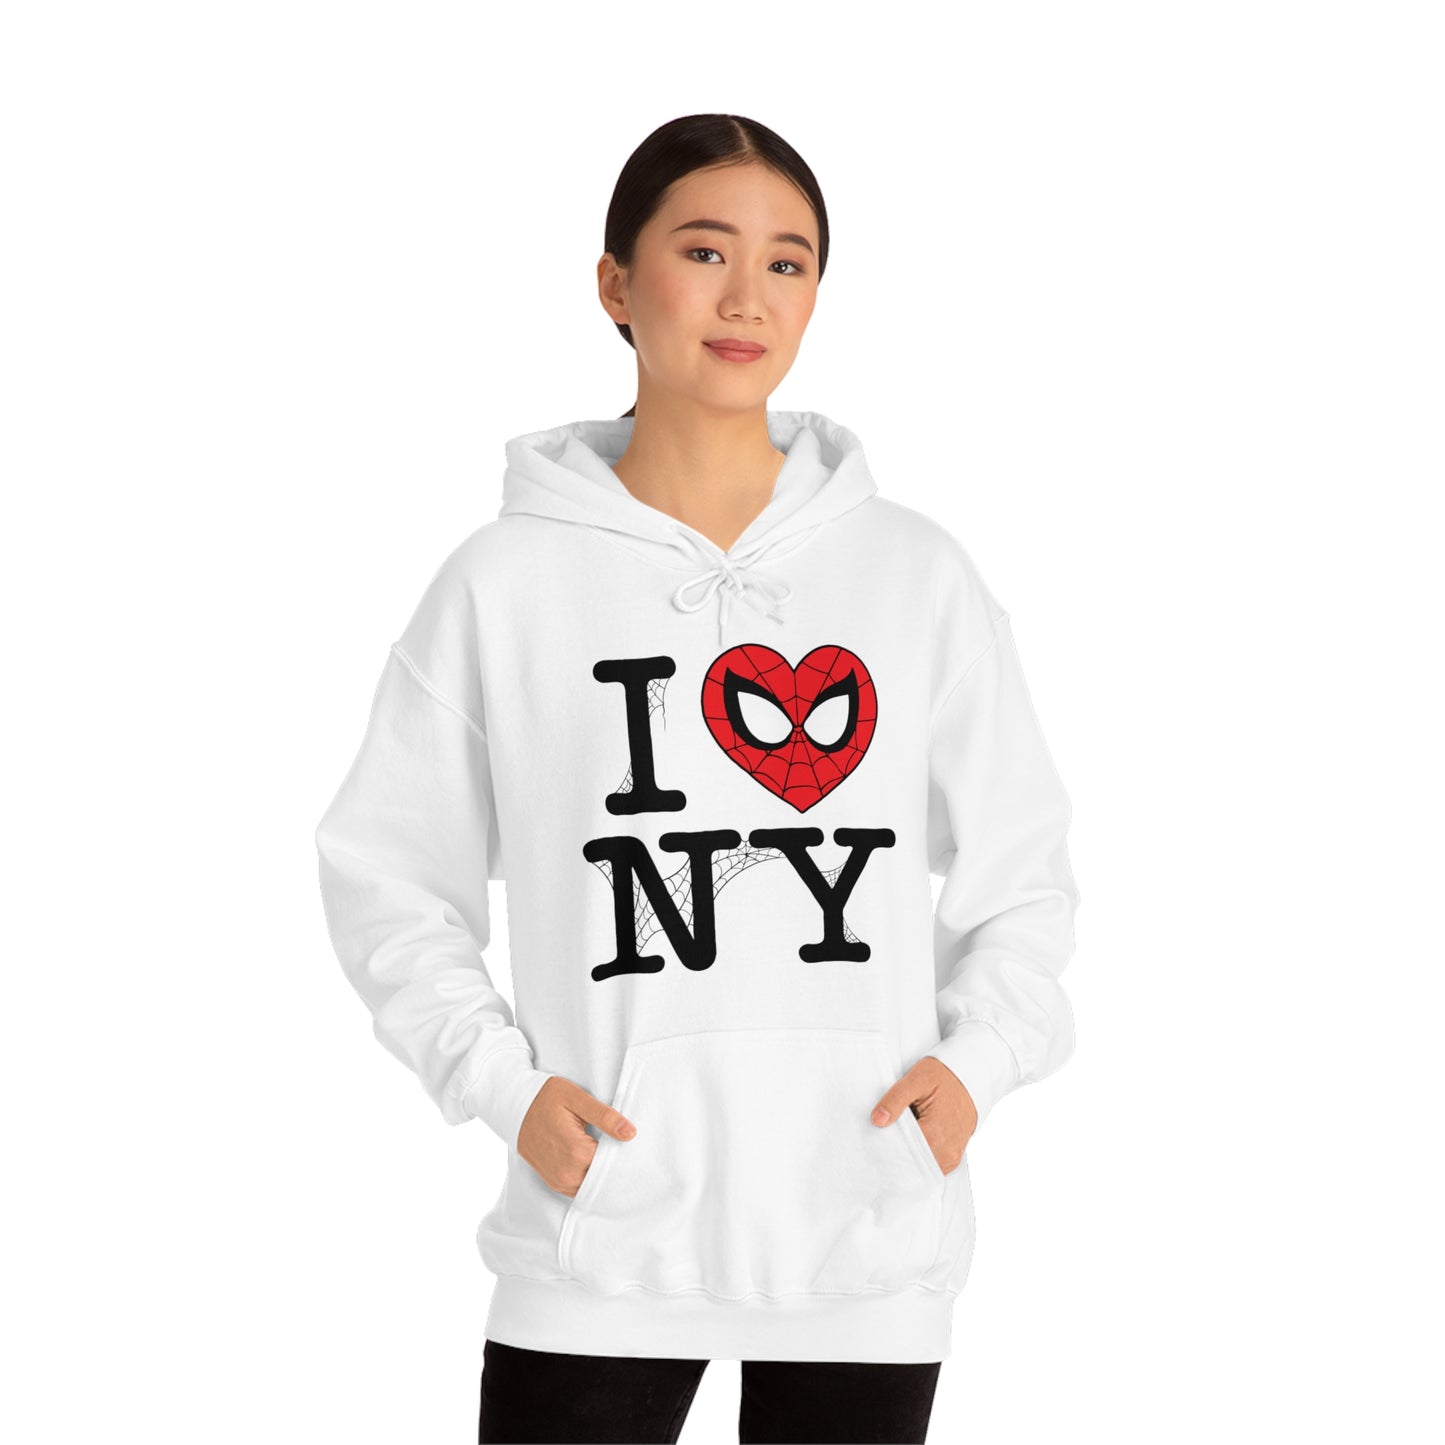 I Spidey NY hooded sweatshirt